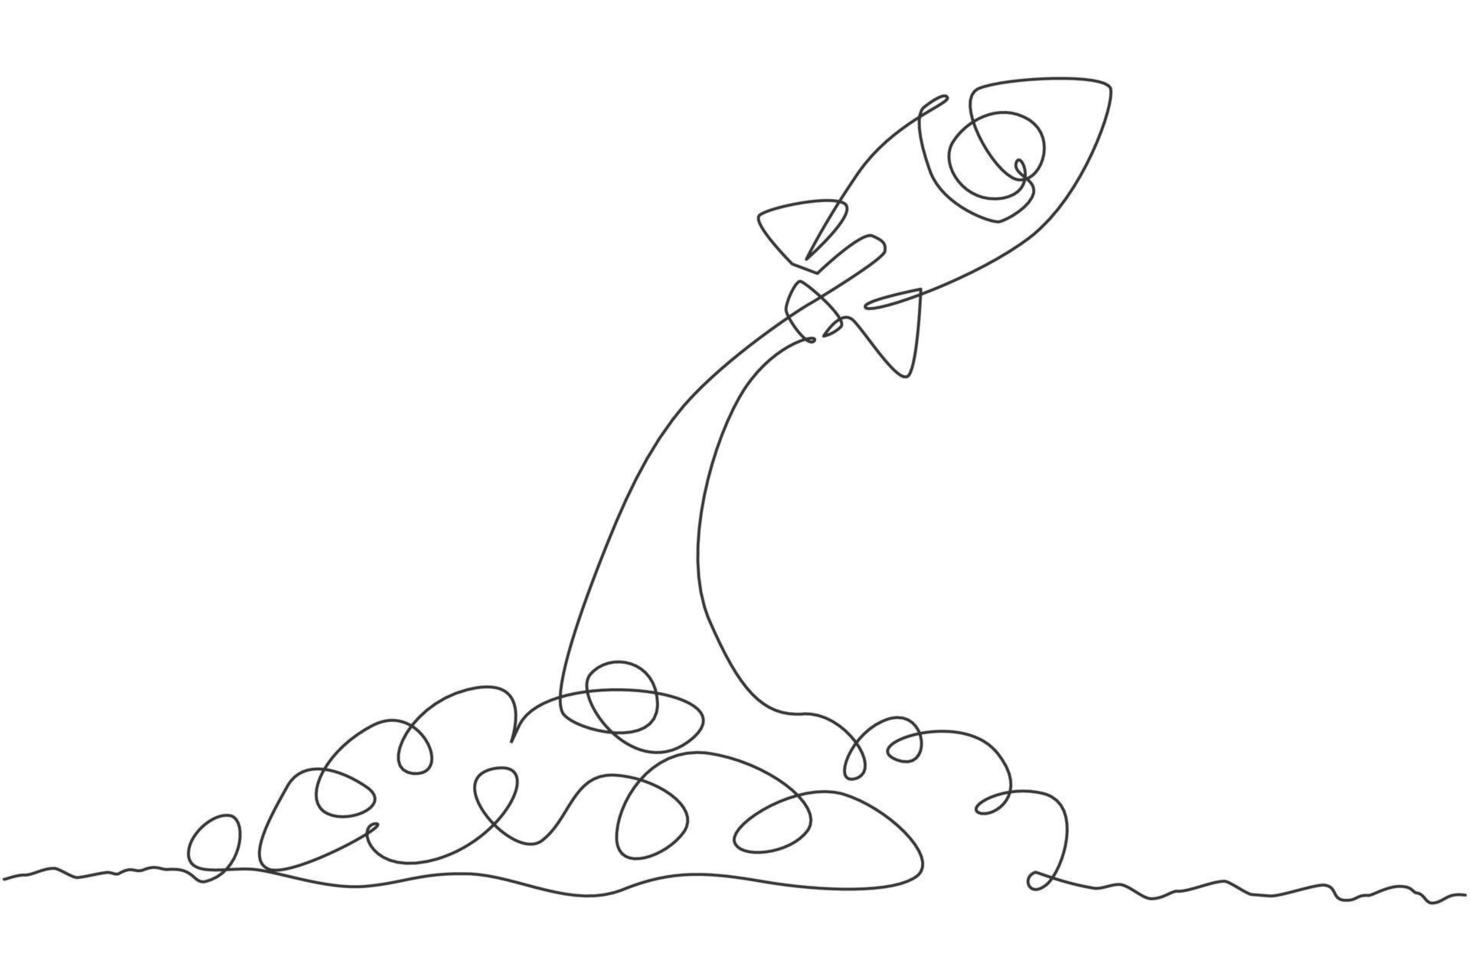 um desenho de linha simples de um foguete vintage simples decola para a ilustração gráfica vetorial do espaço sideral. exploração cosmos galáctica com conceito de nave espacial. design moderno de desenho de linha contínua vetor